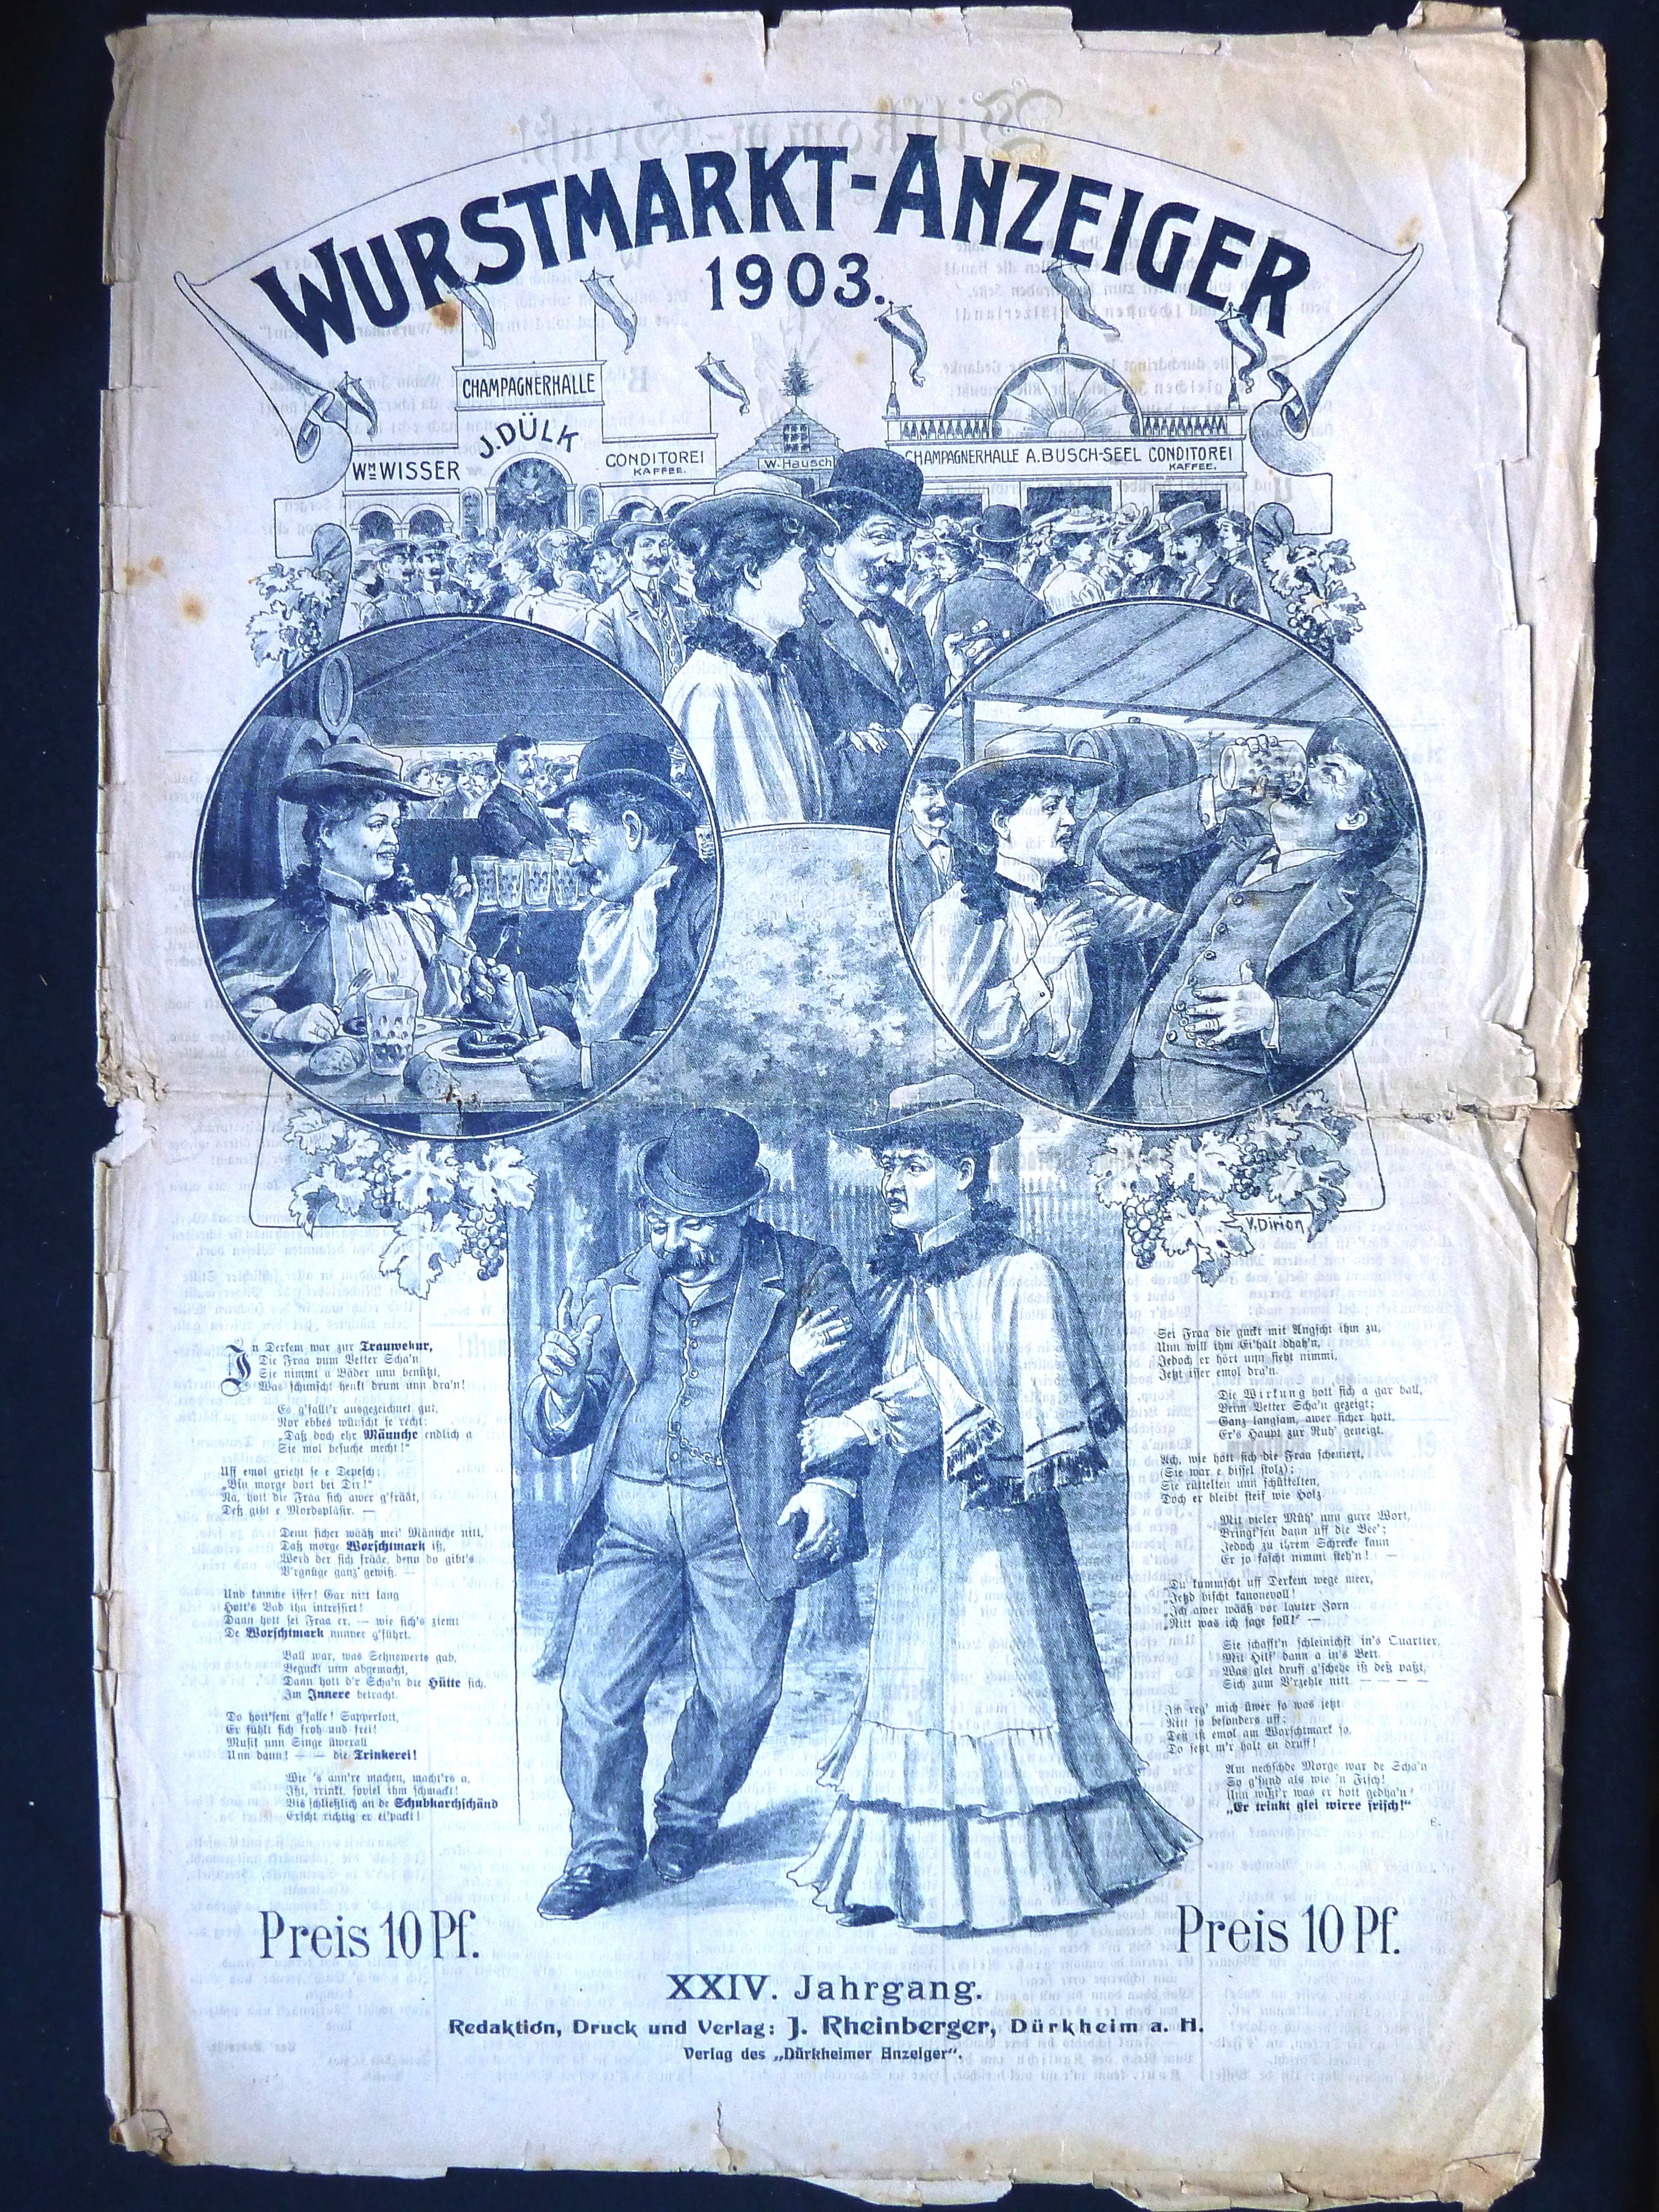 Zeitung; Anzeiger: "Wurstmarkt-Anzeiger"; J. Rheinberger, V. Dirion; Dürkheim a/H.; 1903 (Stadtmuseum Bad Dürkheim, Museumsgesellschaft Bad Dürkheim e.V. CC BY-NC-SA)